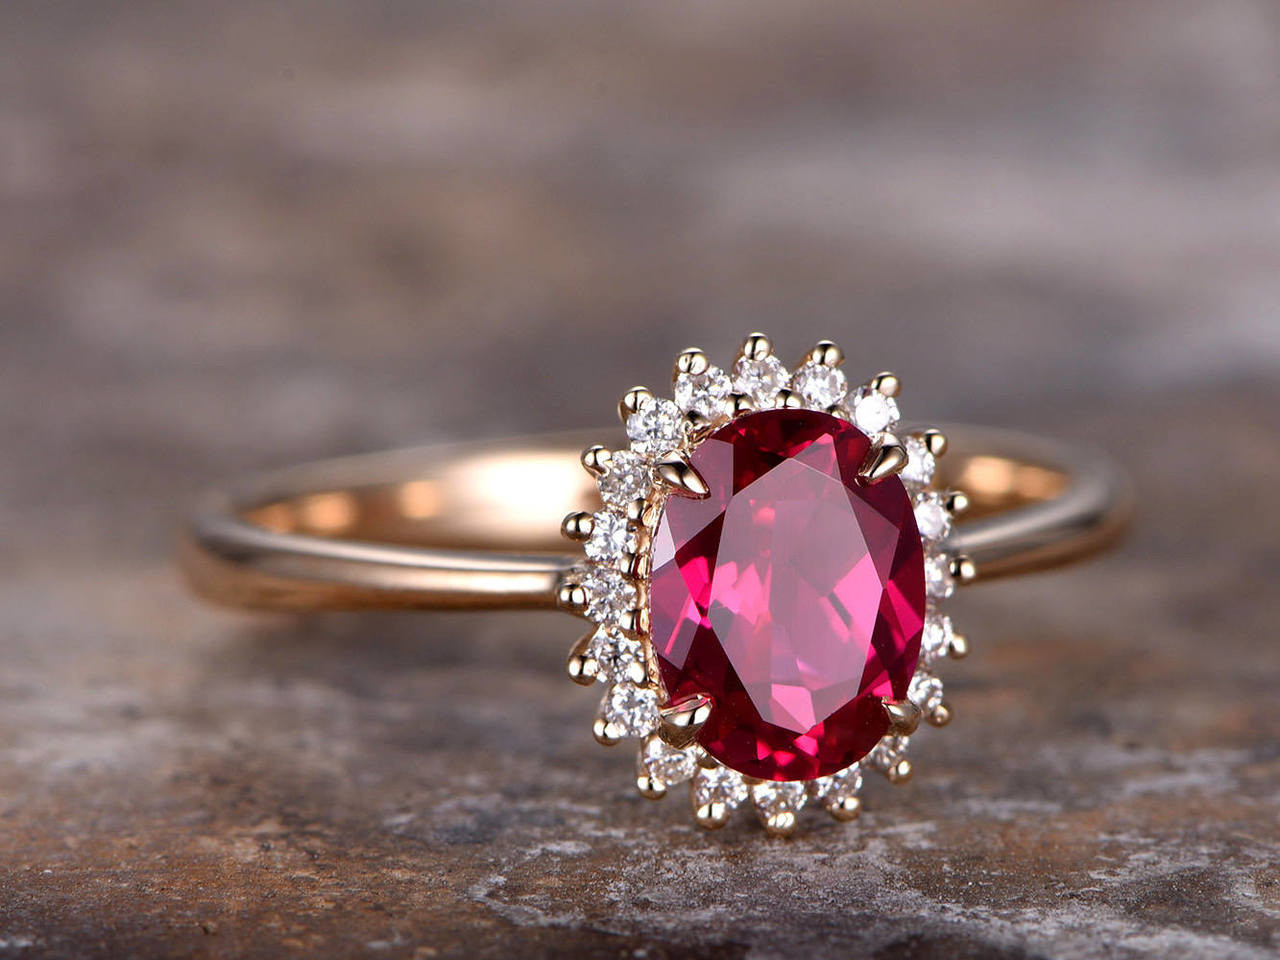 giá của một chiếc nhẫn với hồng ngọc